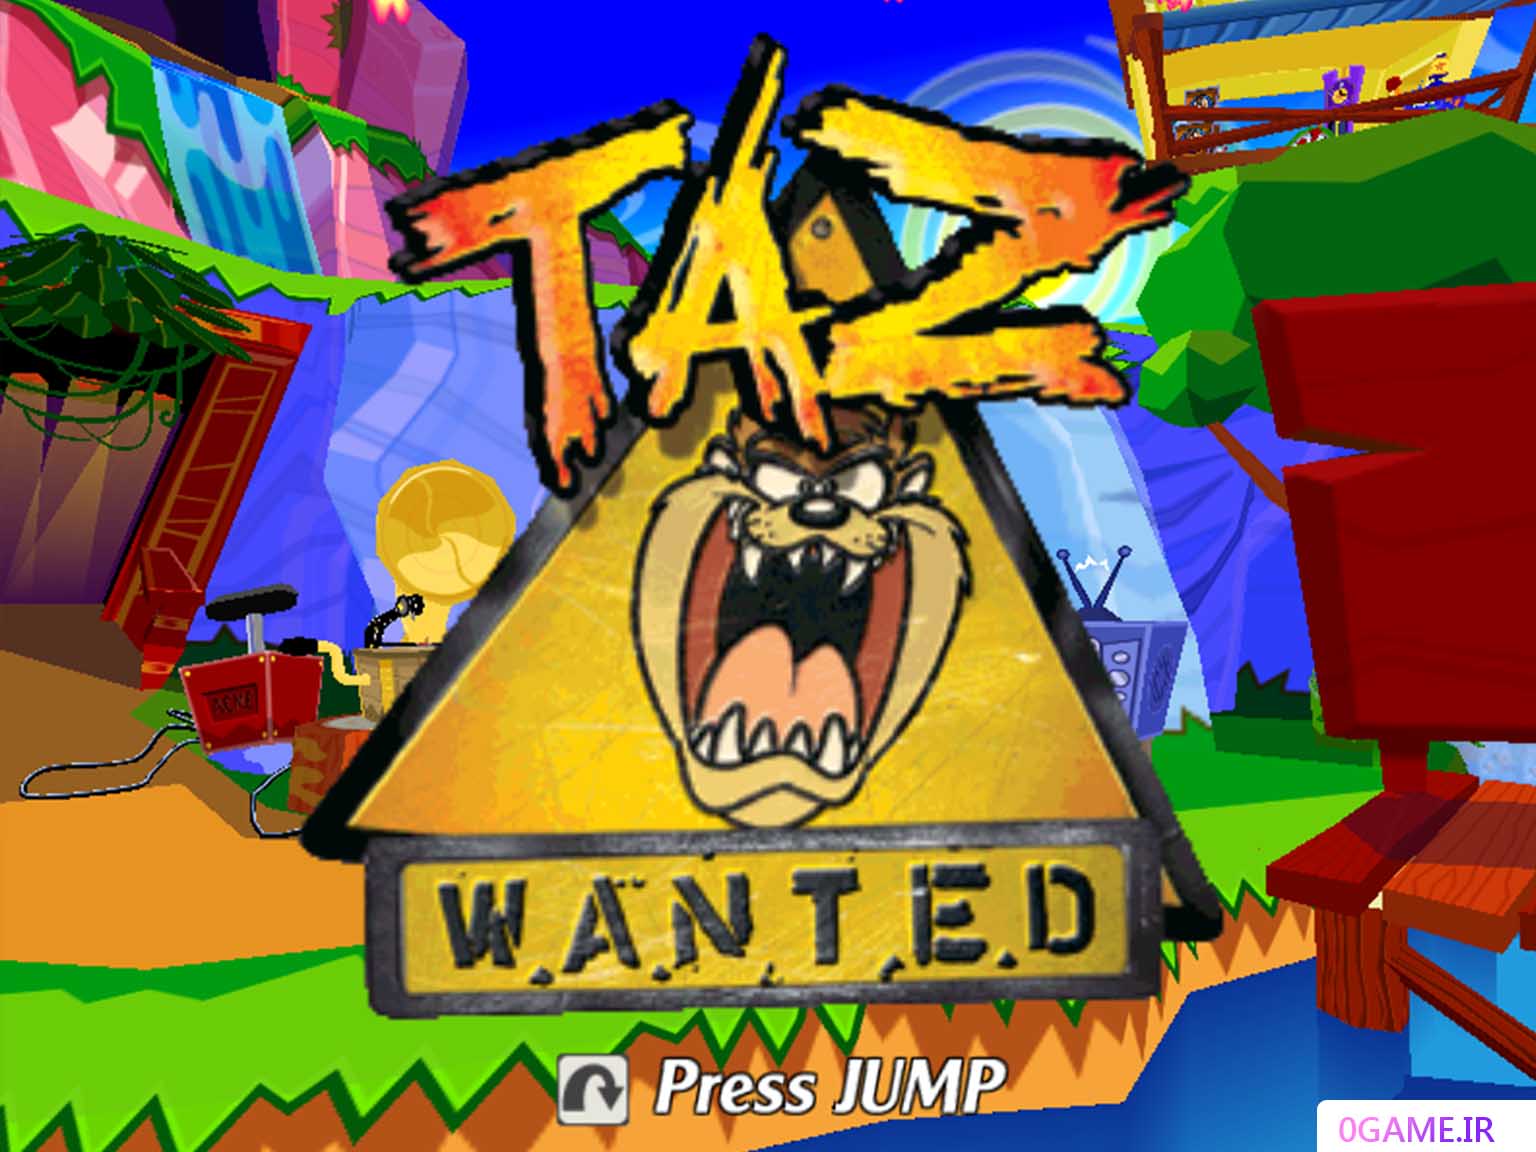 دانلود بازی تاز وانتد (Taz Wanted) نسخه کامل برای کامپیوتر